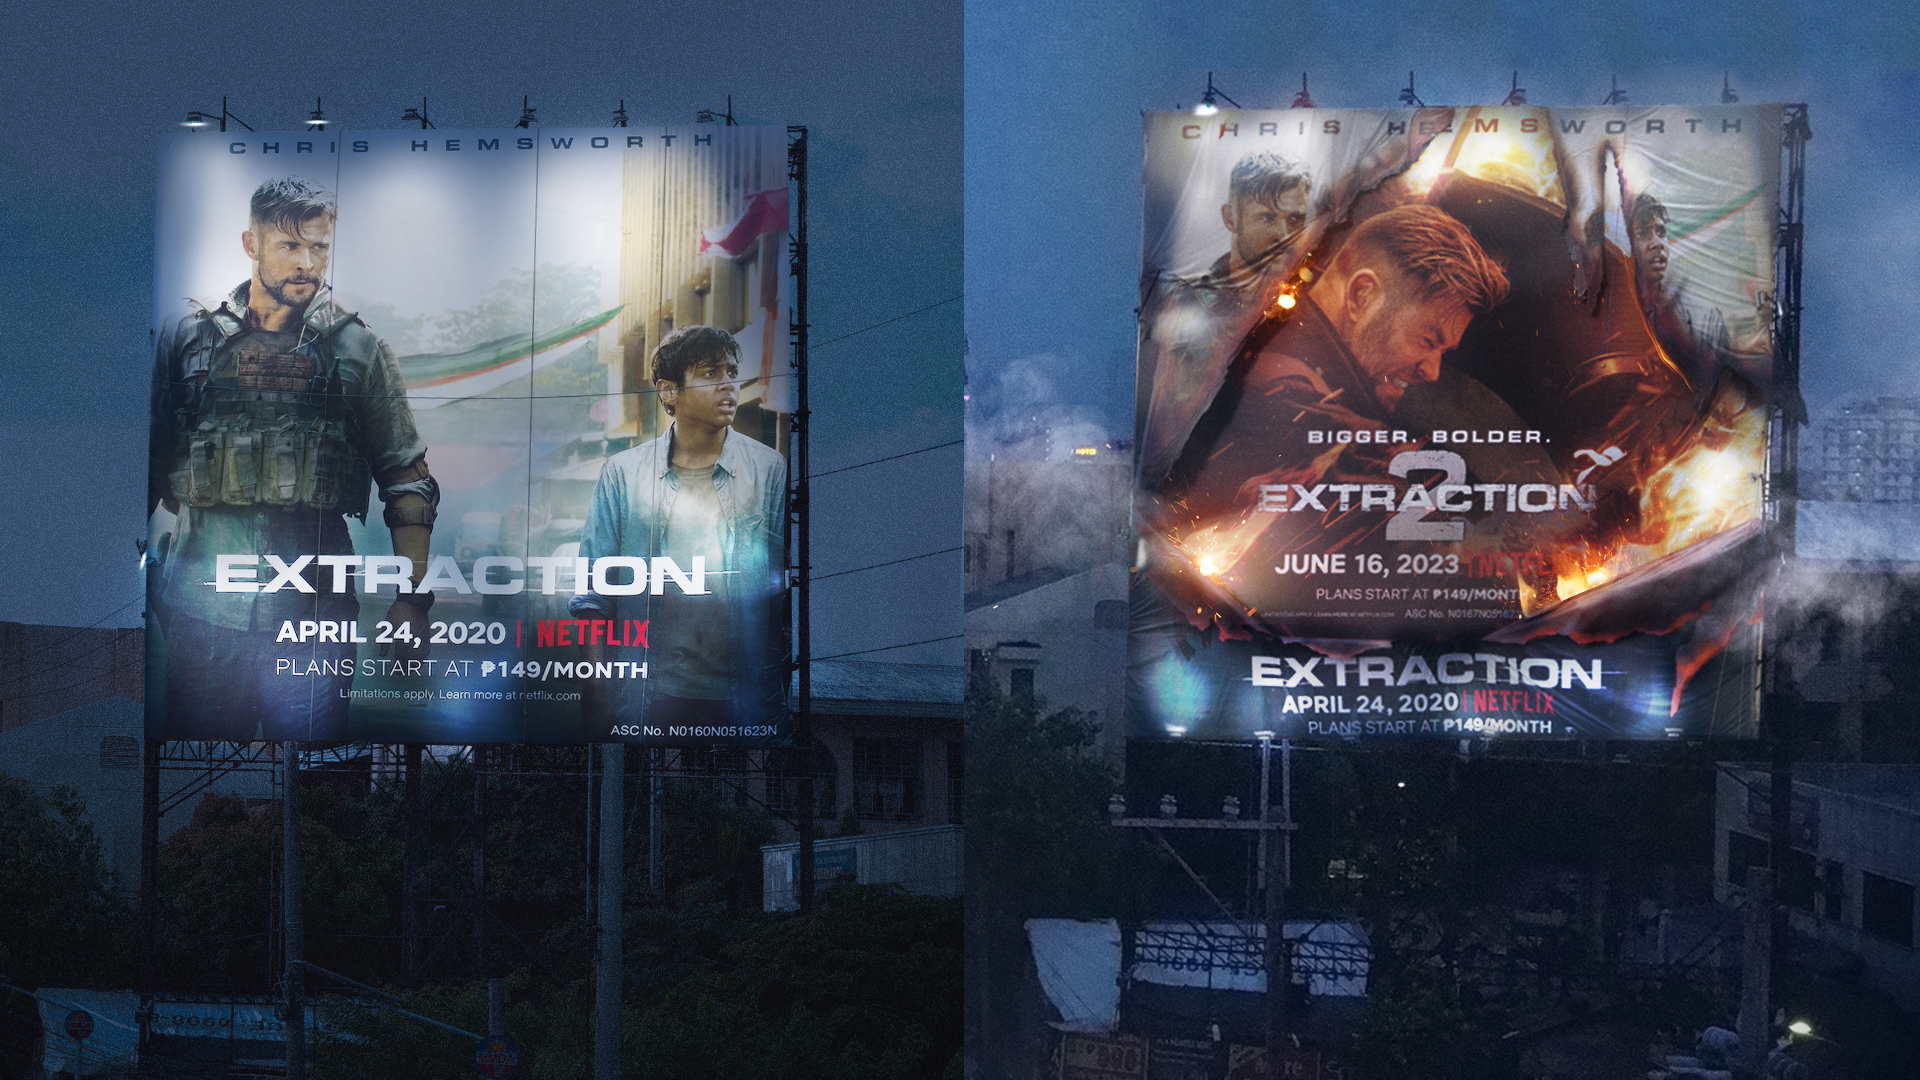 Netflix Extraction billboard blown apart, reveals ‘Extraction 2’